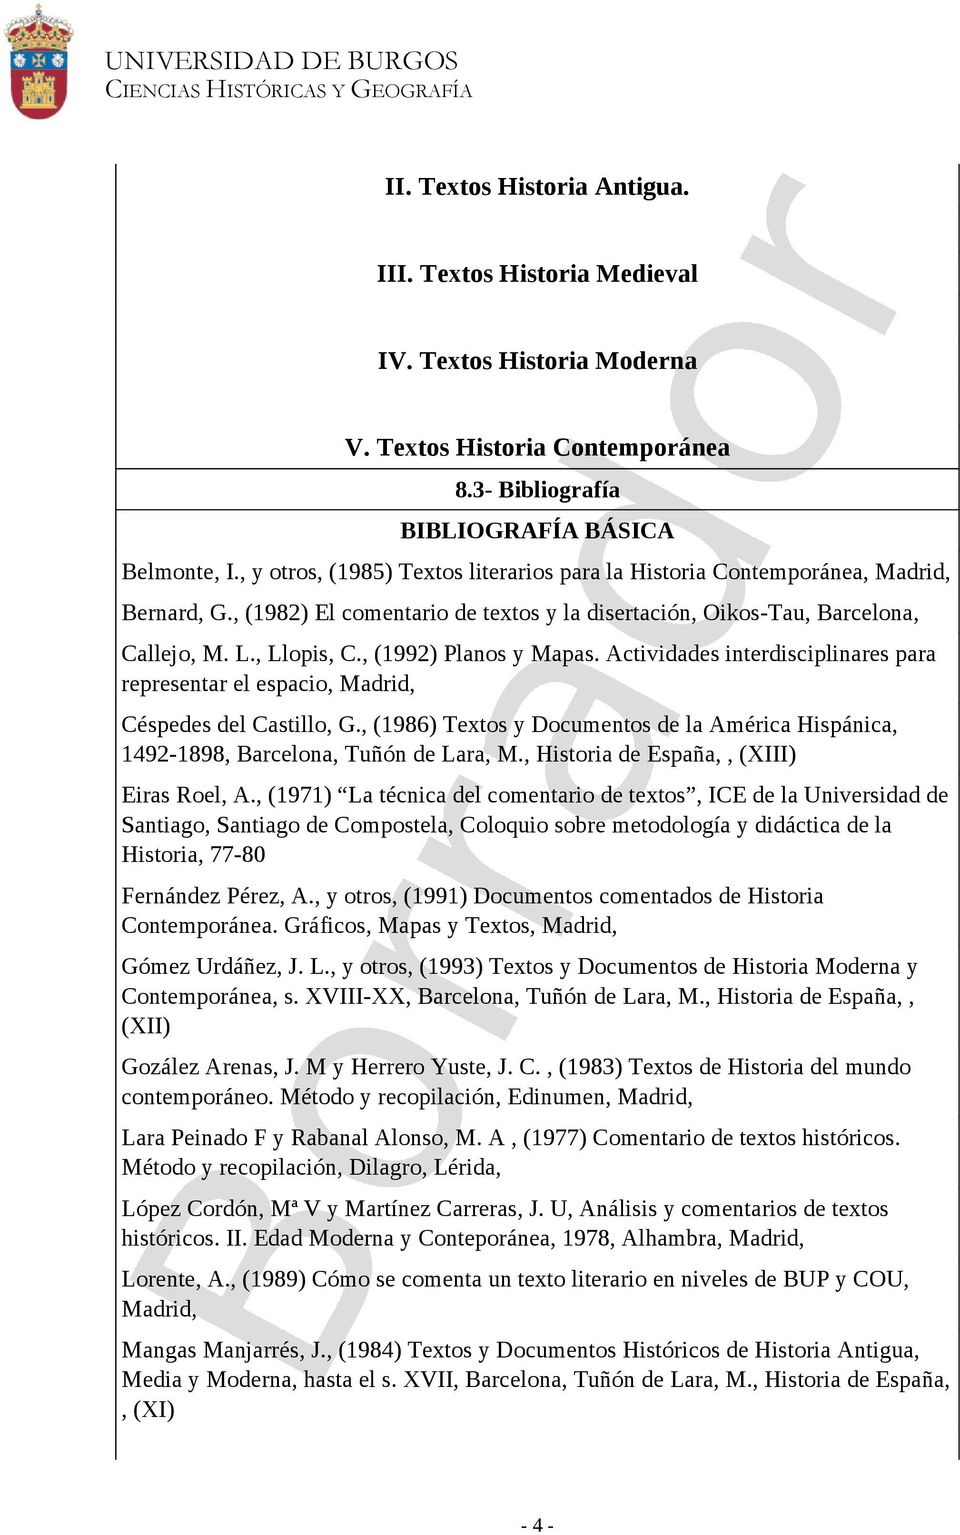 , (1992) Planos y Mapas. Actividades interdisciplinares para representar el espacio, Madrid, Céspedes del Castillo, G.